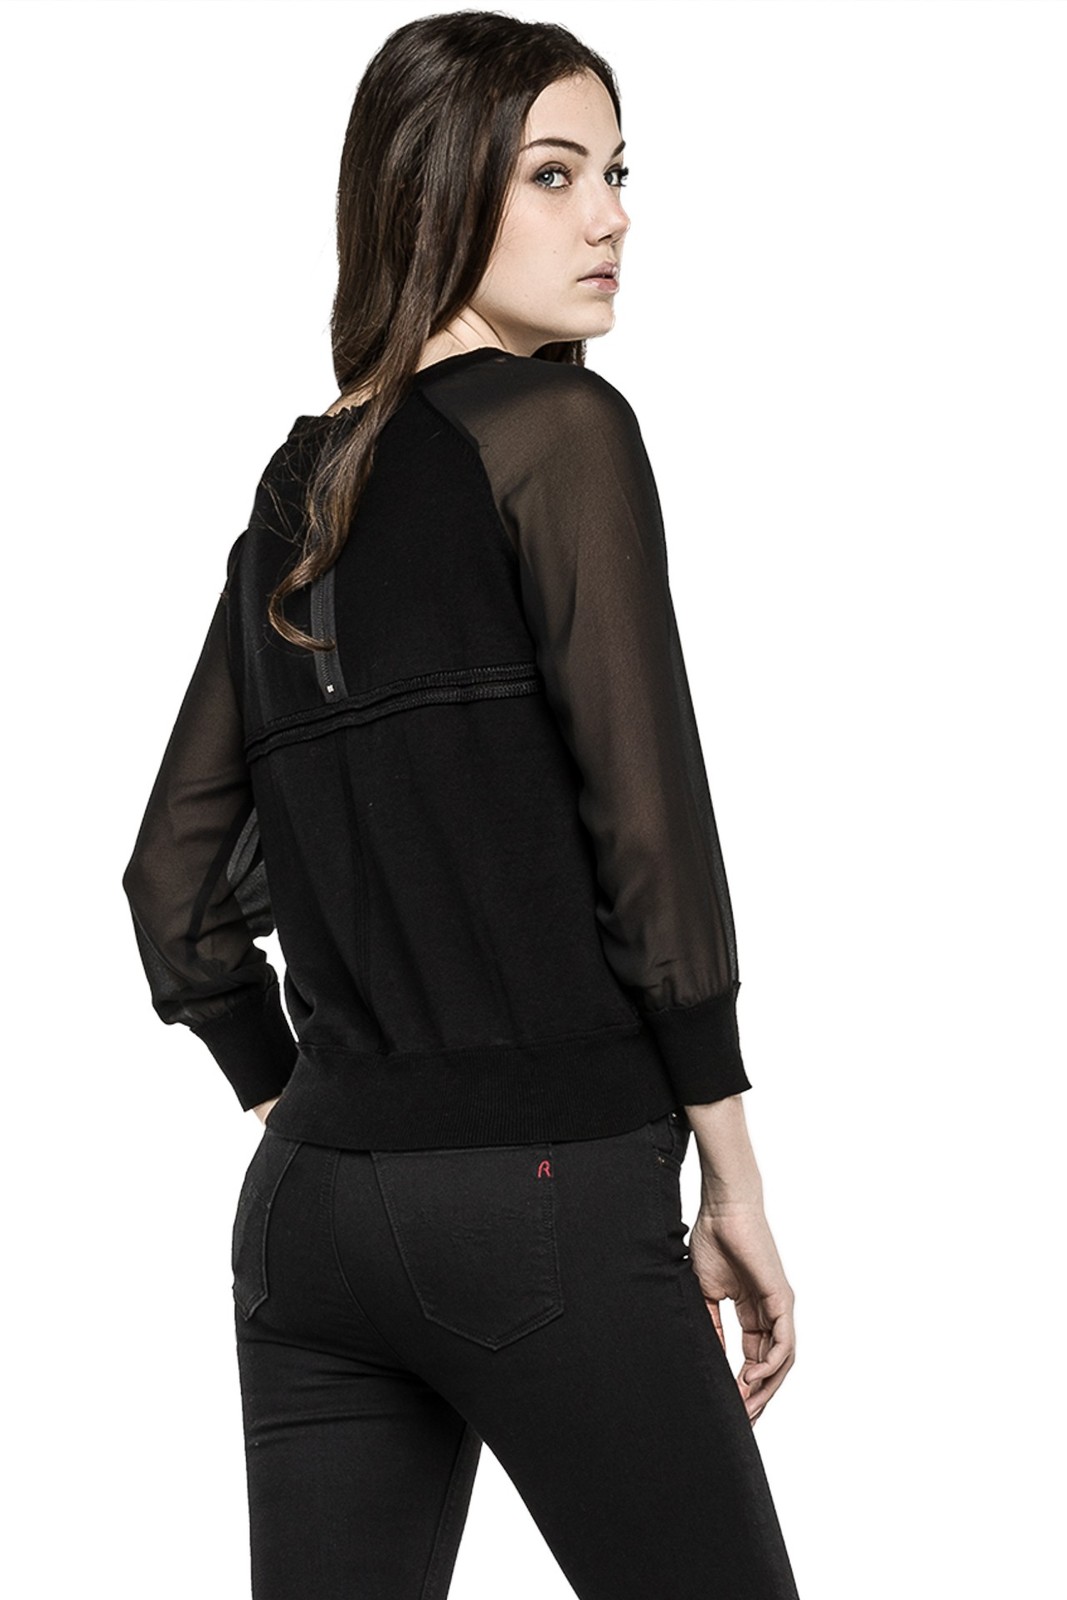 Replay női fekete pamut-lenvászon keverék pulcsi 2015 fotója